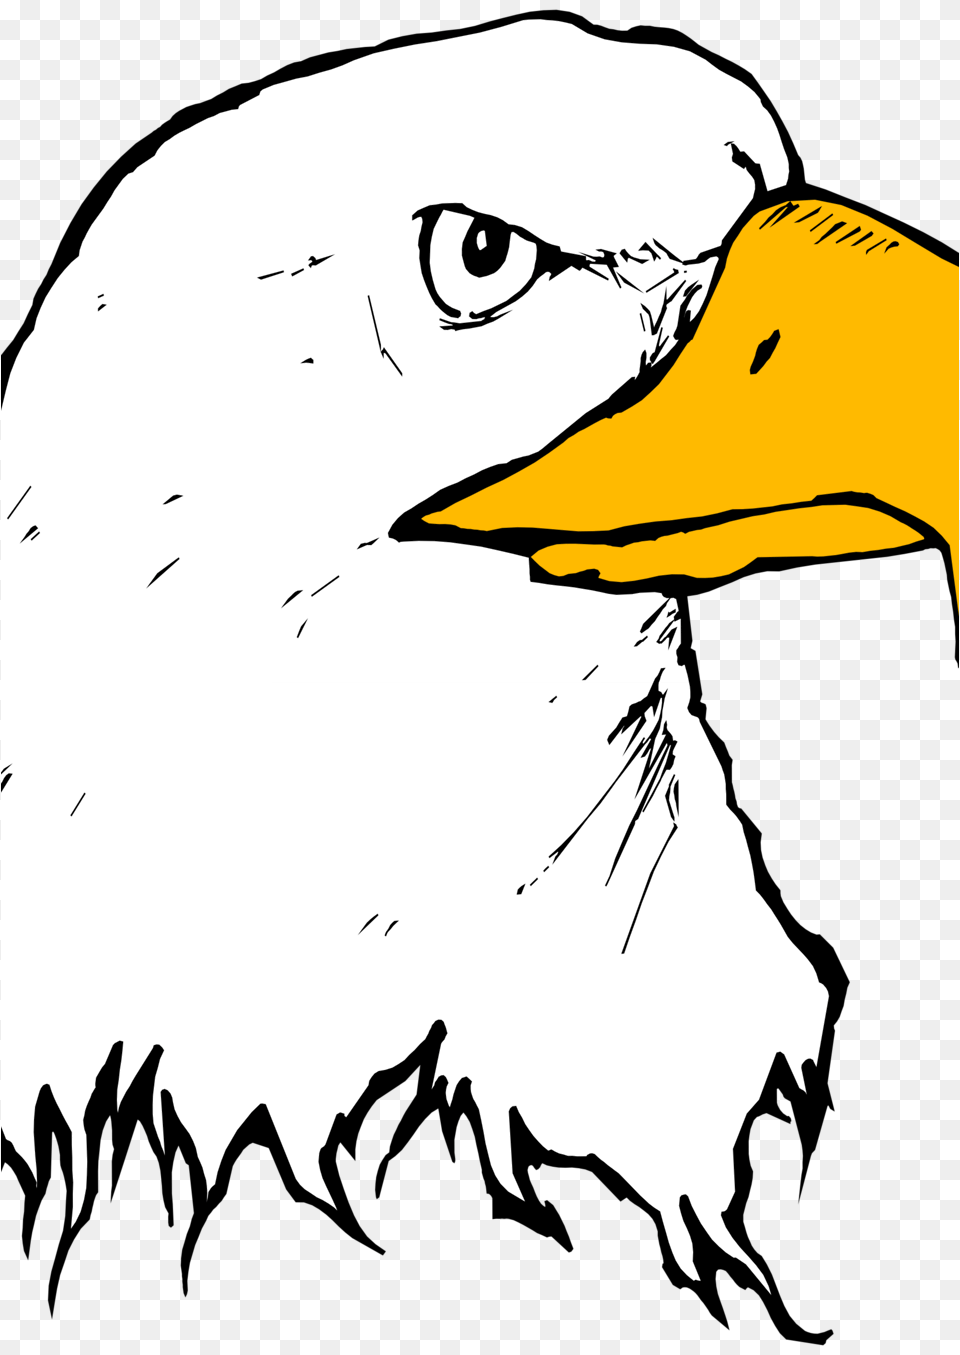 Image, Animal, Beak, Bird, Eagle Png